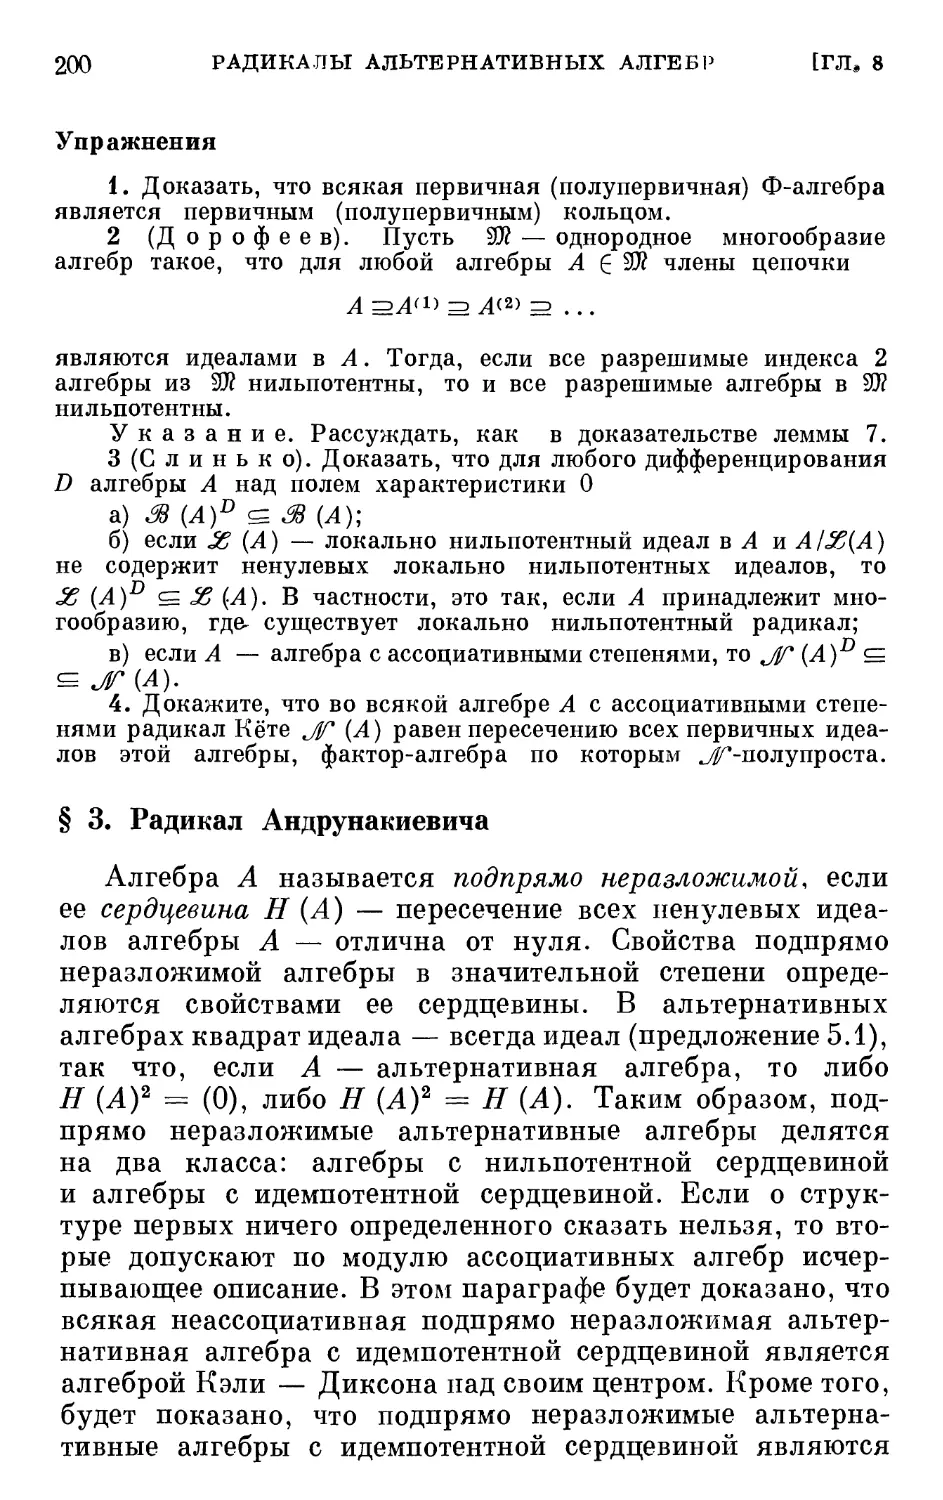 § 3. Радикал Андрунакиевича